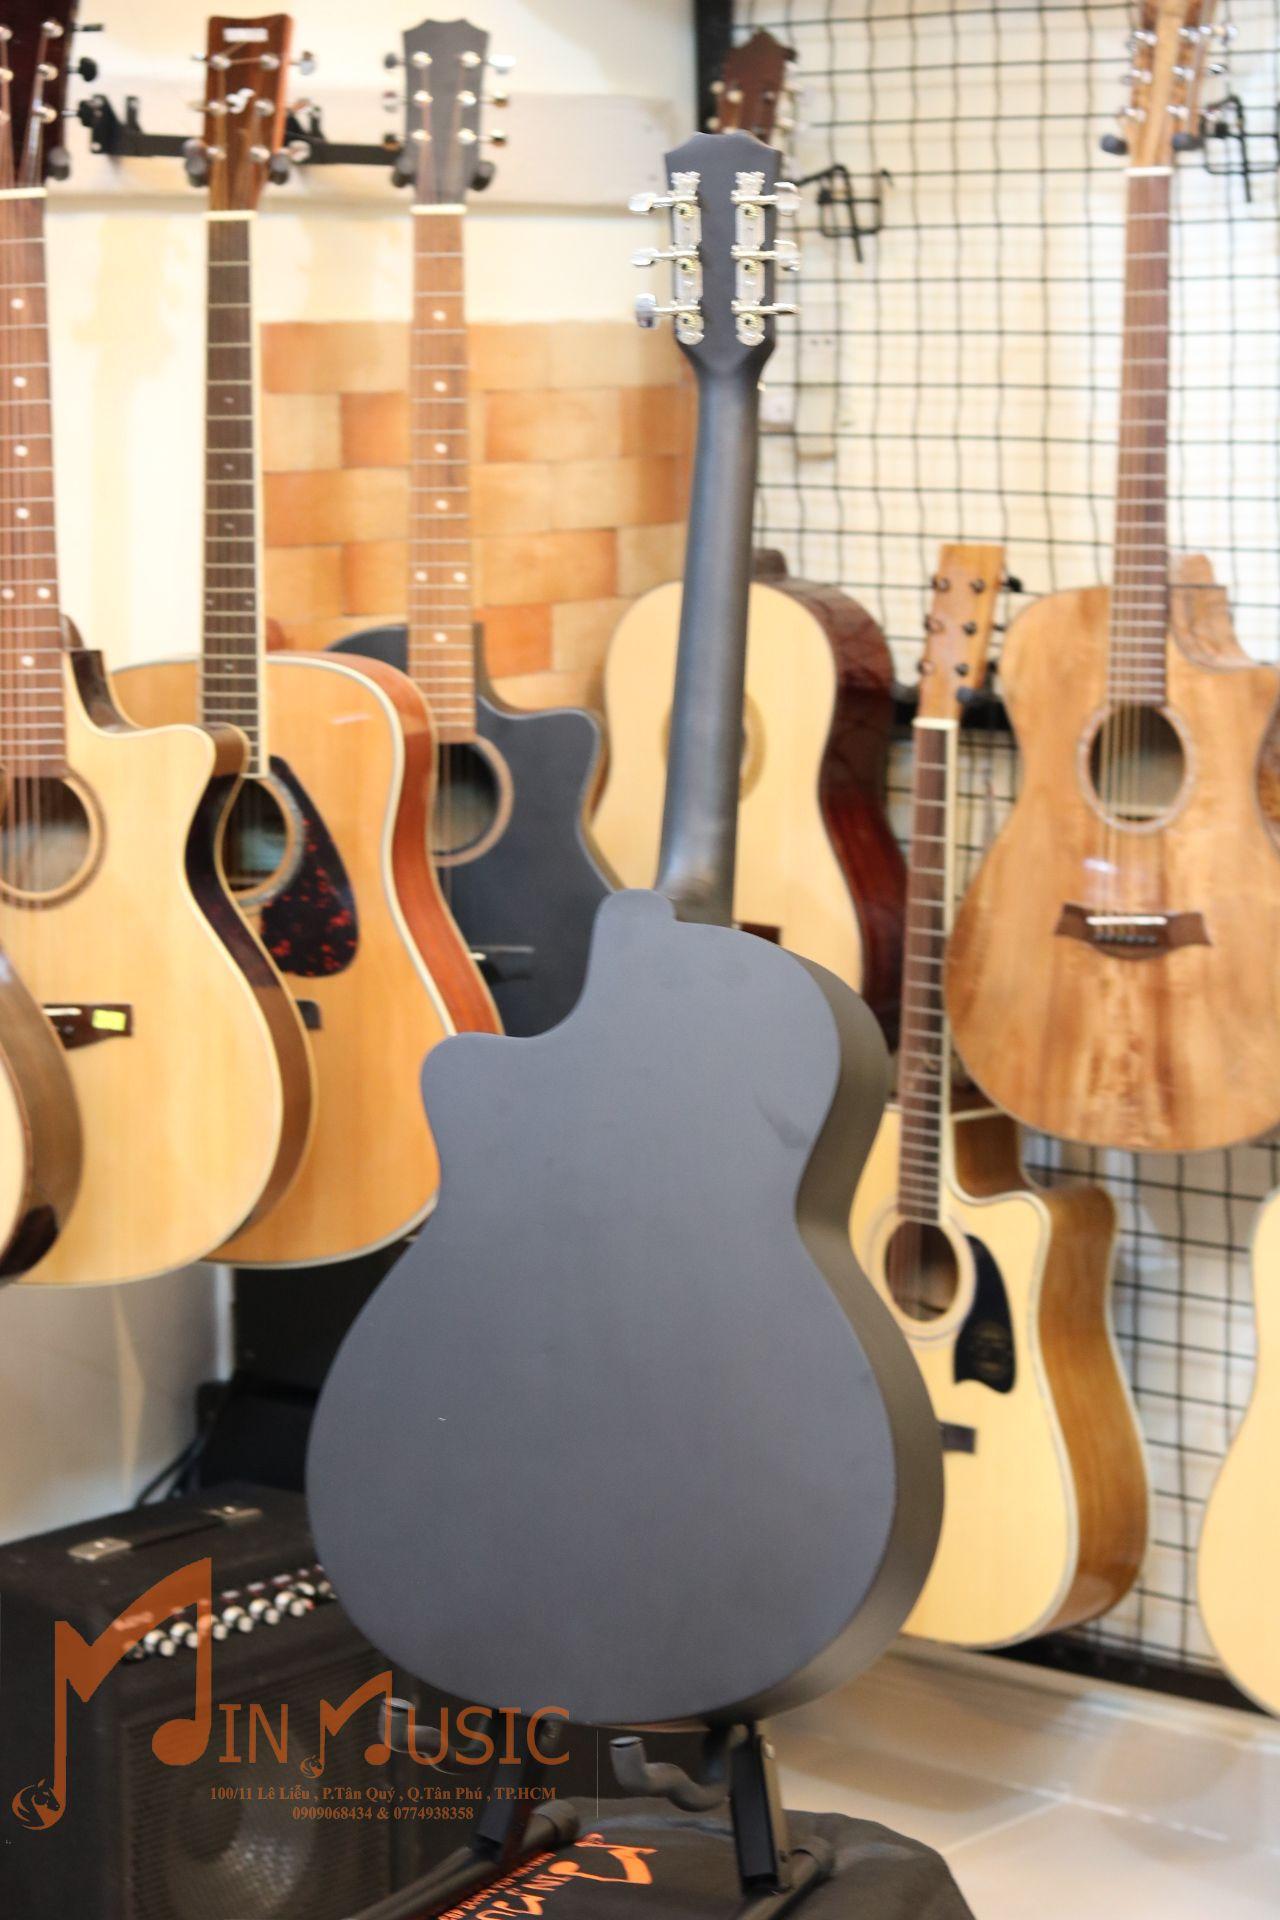 Đàn Guitar Acoustic M300 âm thanh tự nhiên và chân thật, có độ bền cao, dễ dàng sử dụng cho...